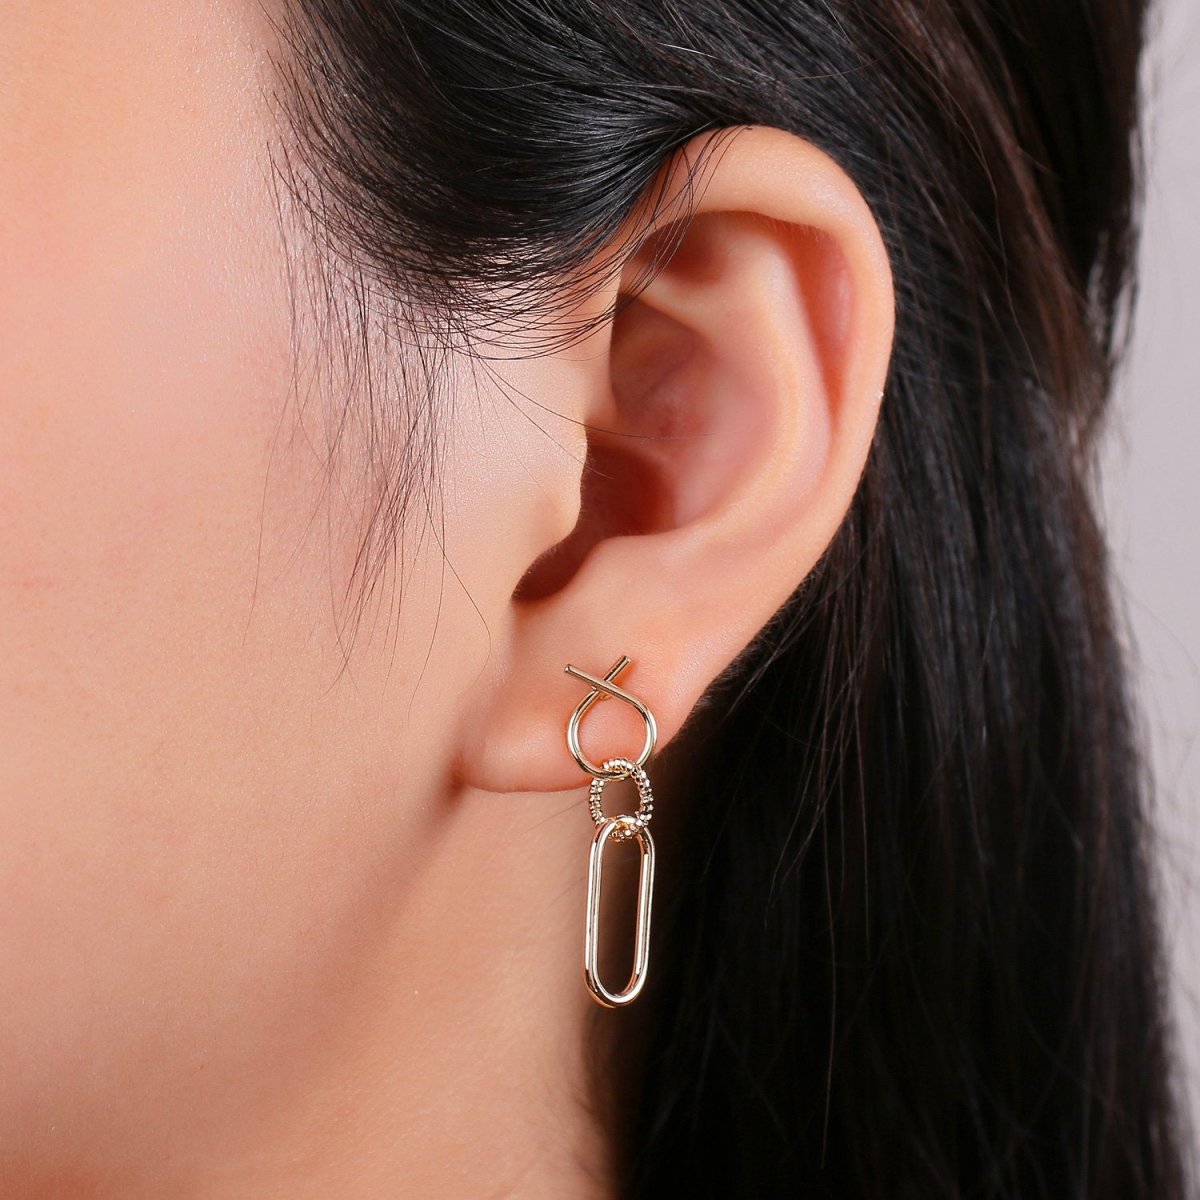 Dainty Chain Link Earrings, Gold Drop Earrings, Gold Dangle Earrings, 14k Gold Filled Earrings, 1 pair Geometric Earring K-841 - DLUXCA